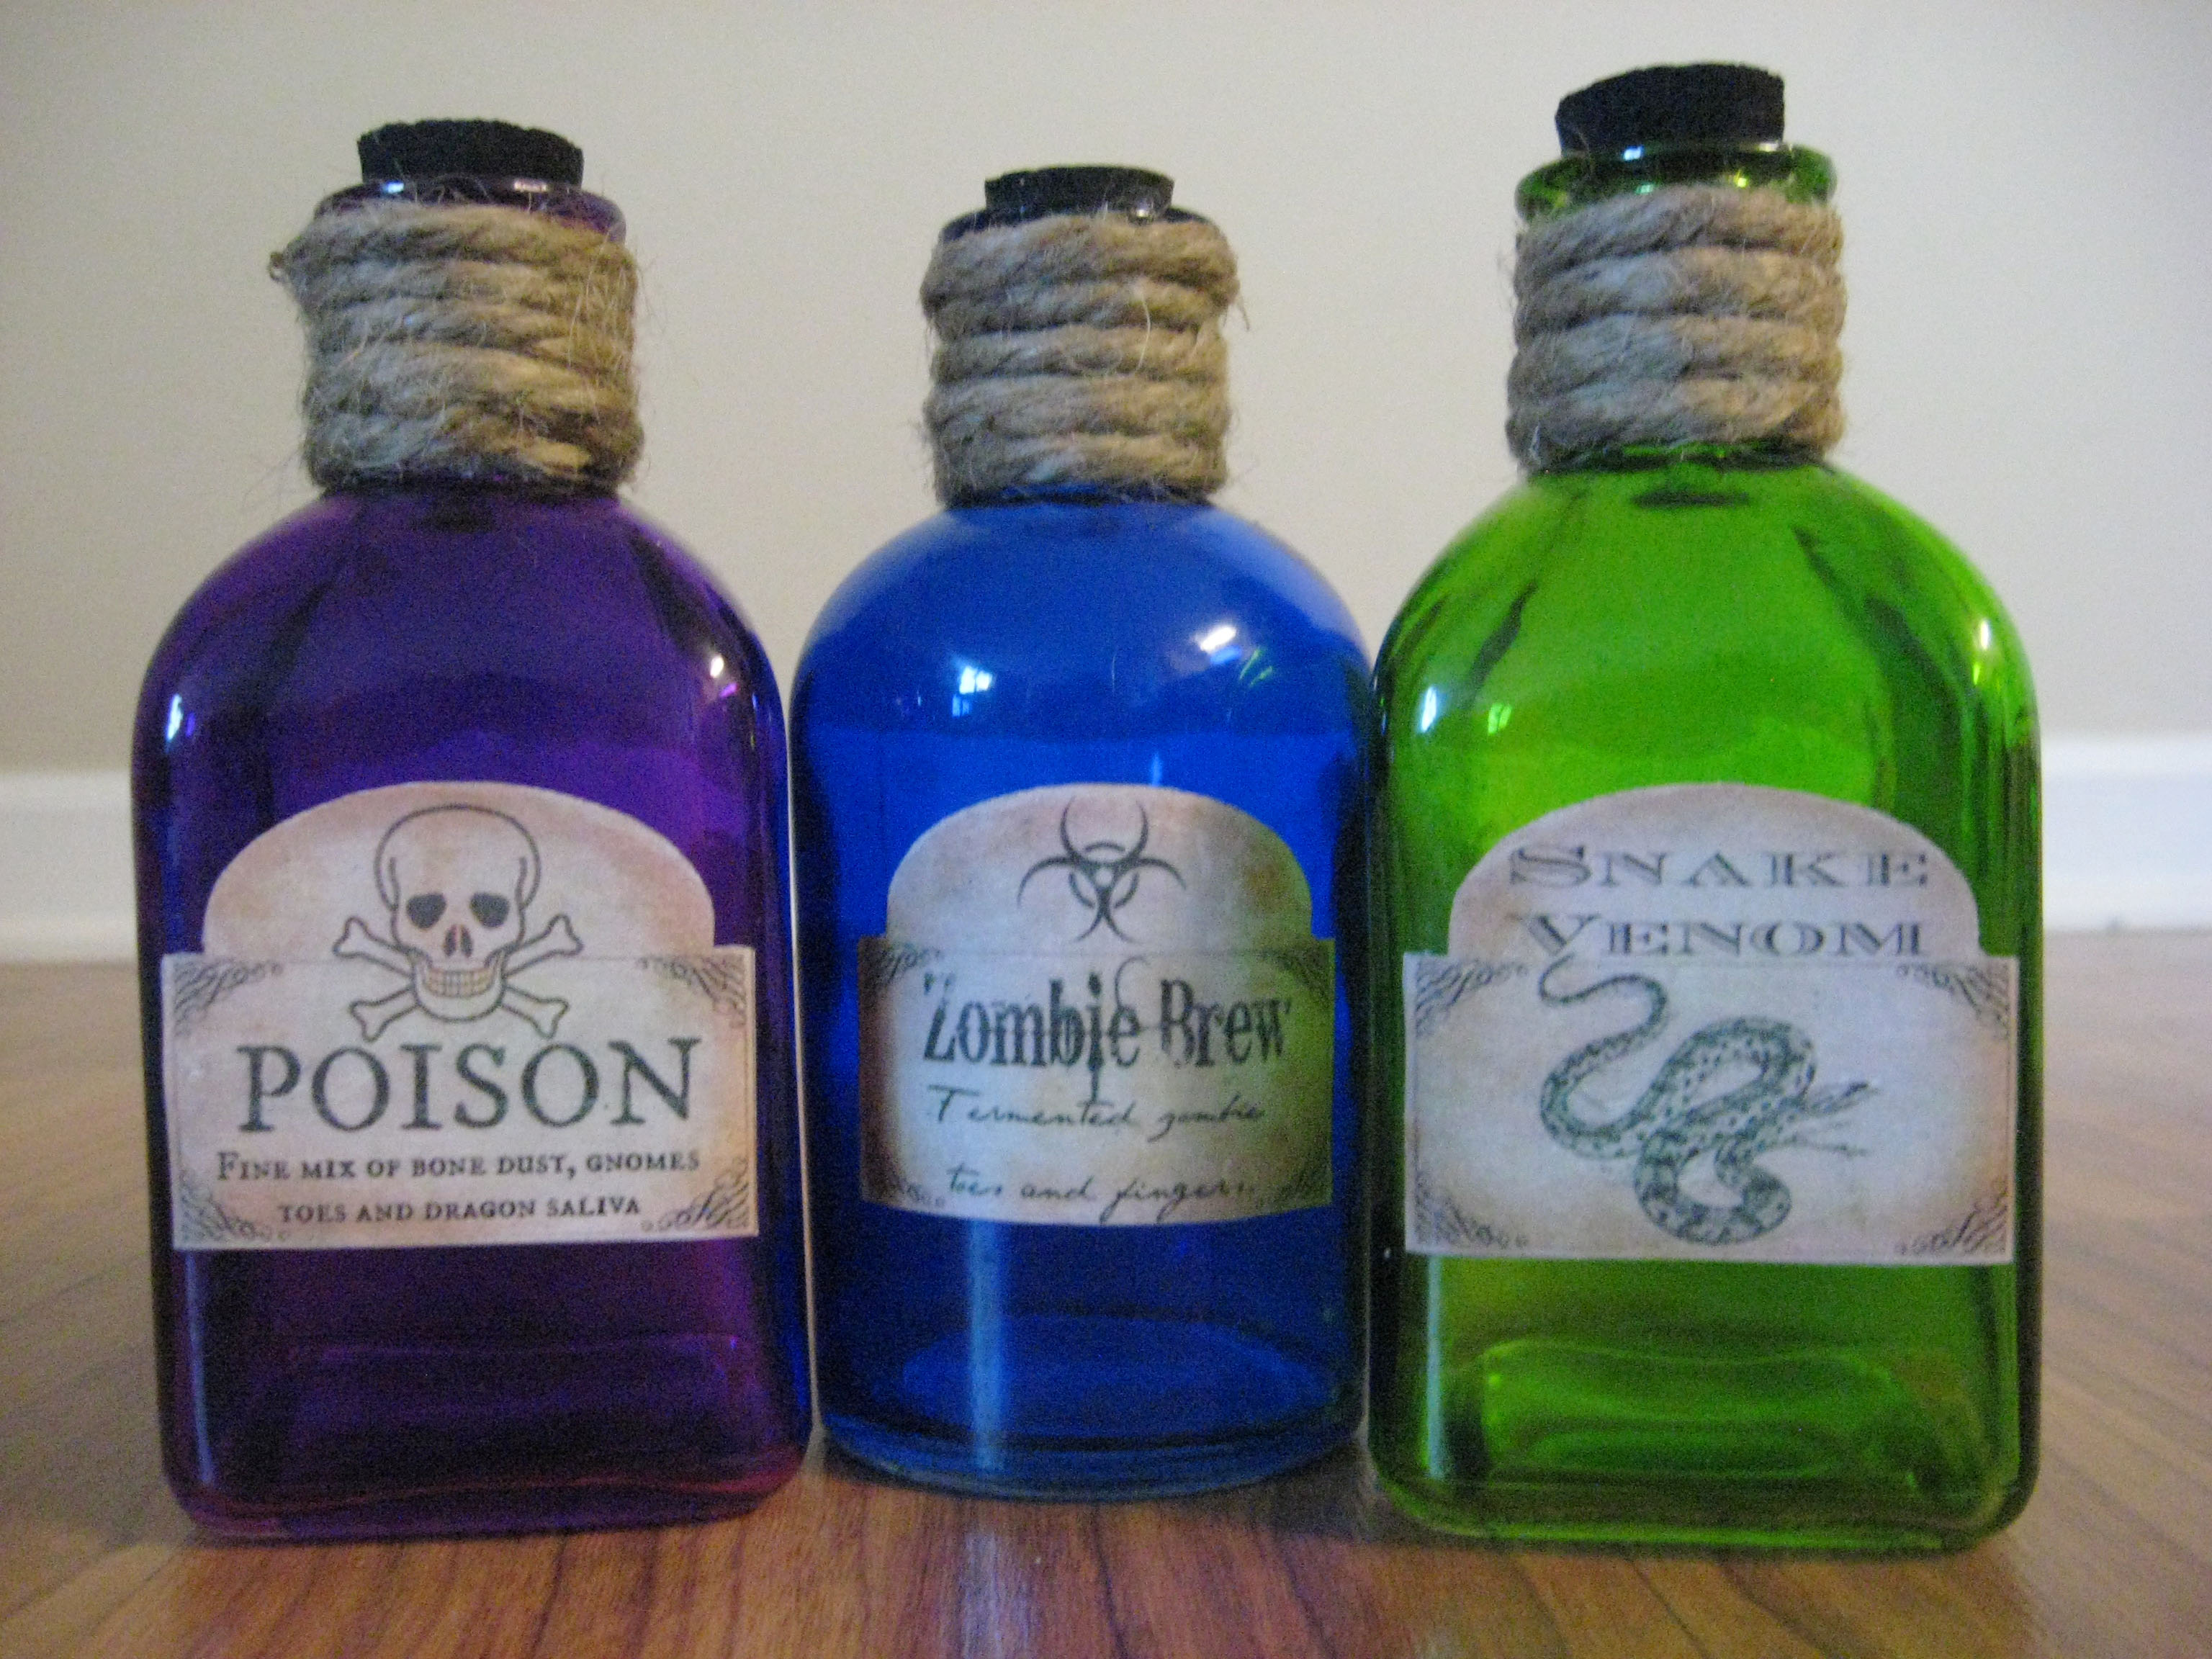 Diy Halloween Potion Bottle Labels